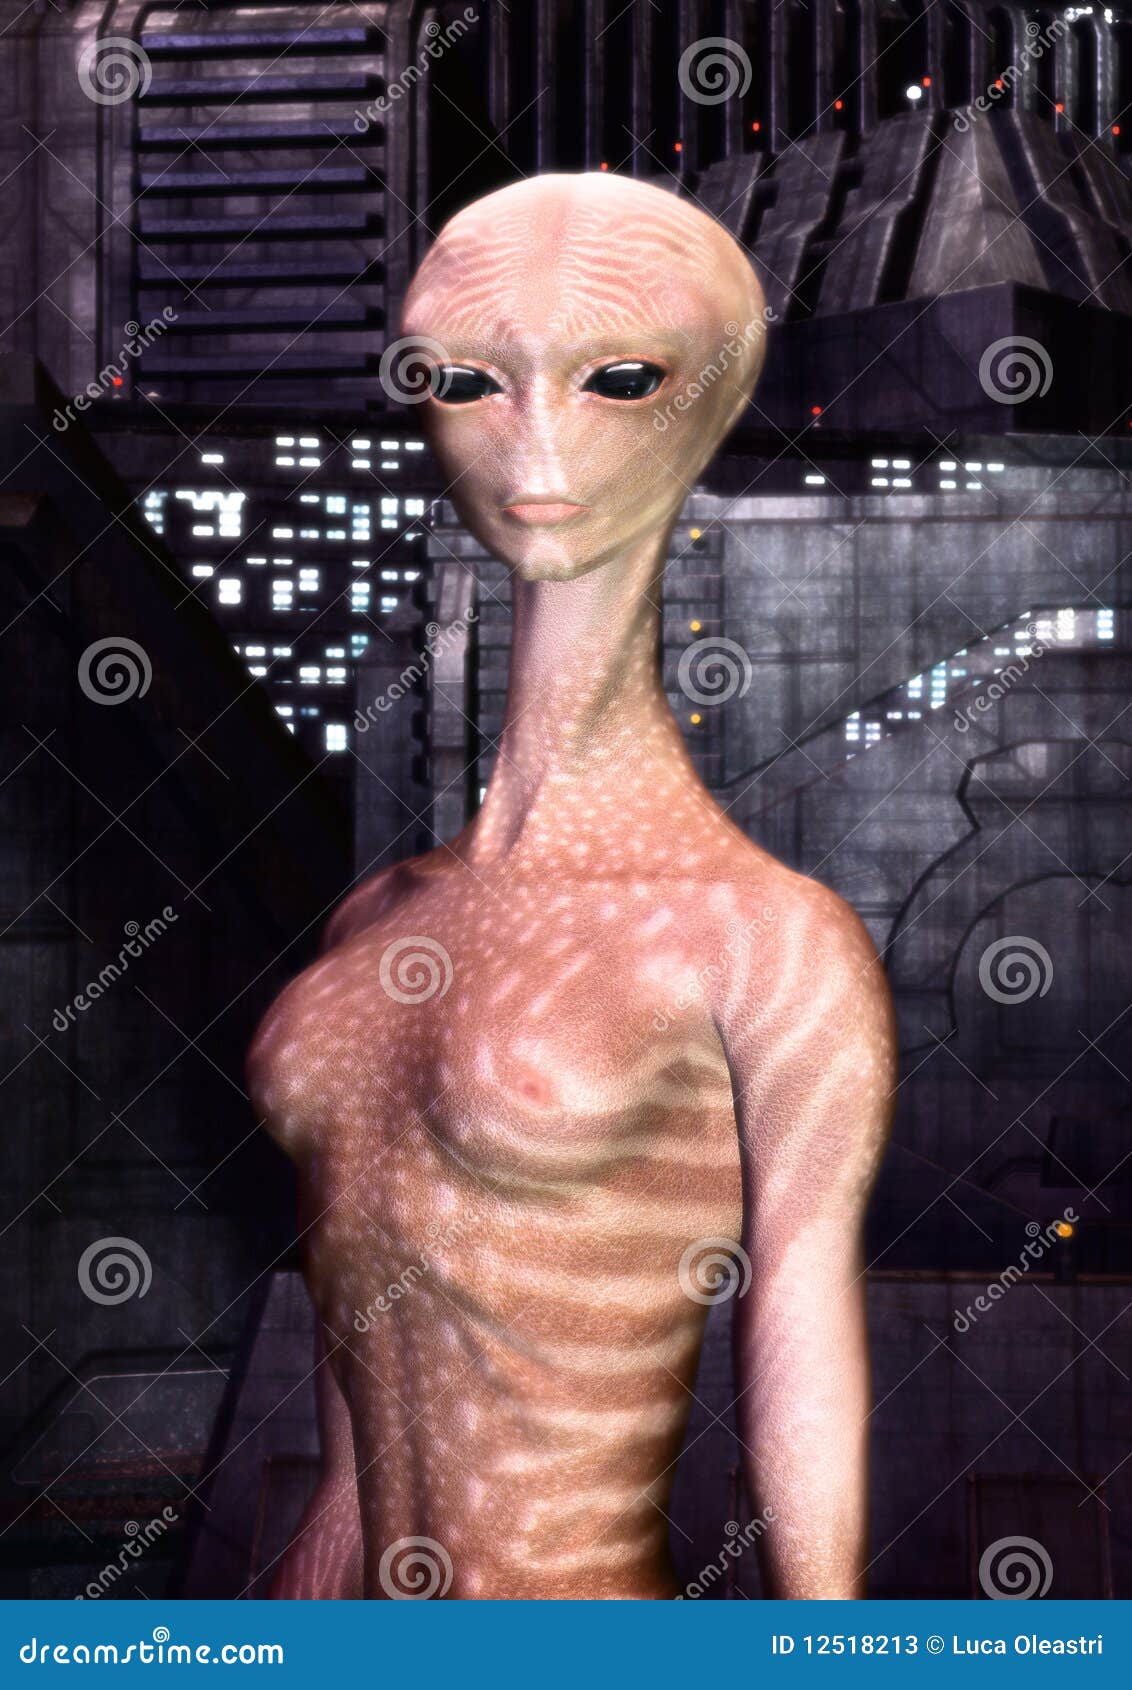 alien-girl-12518213.jpg